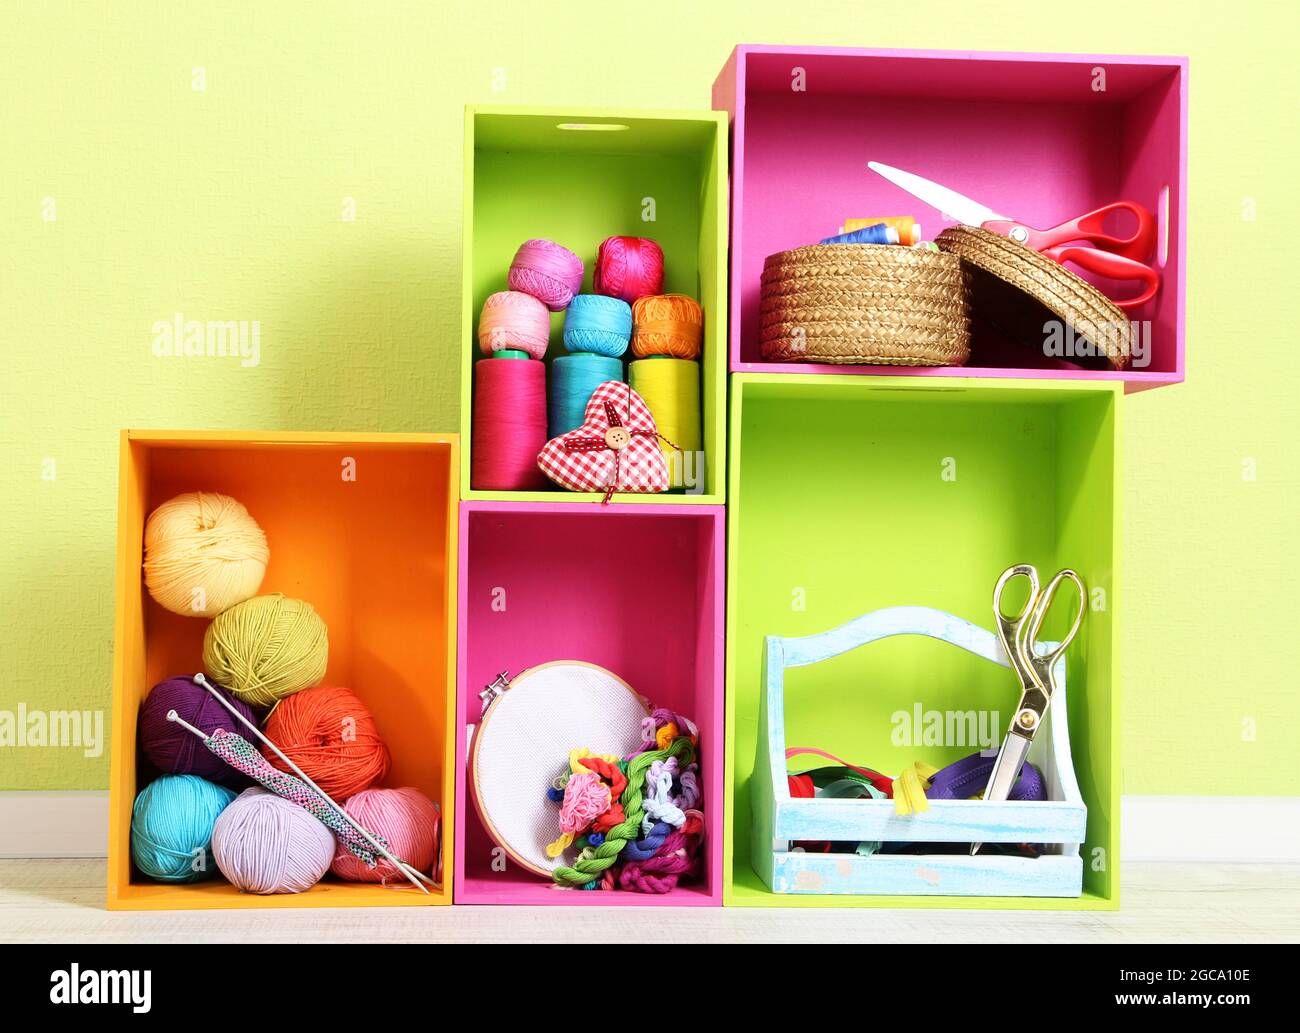 Bunte Regale in verschiedenen Farben mit Utensilien auf Wand Hintergrund  Stockfotografie - Alamy